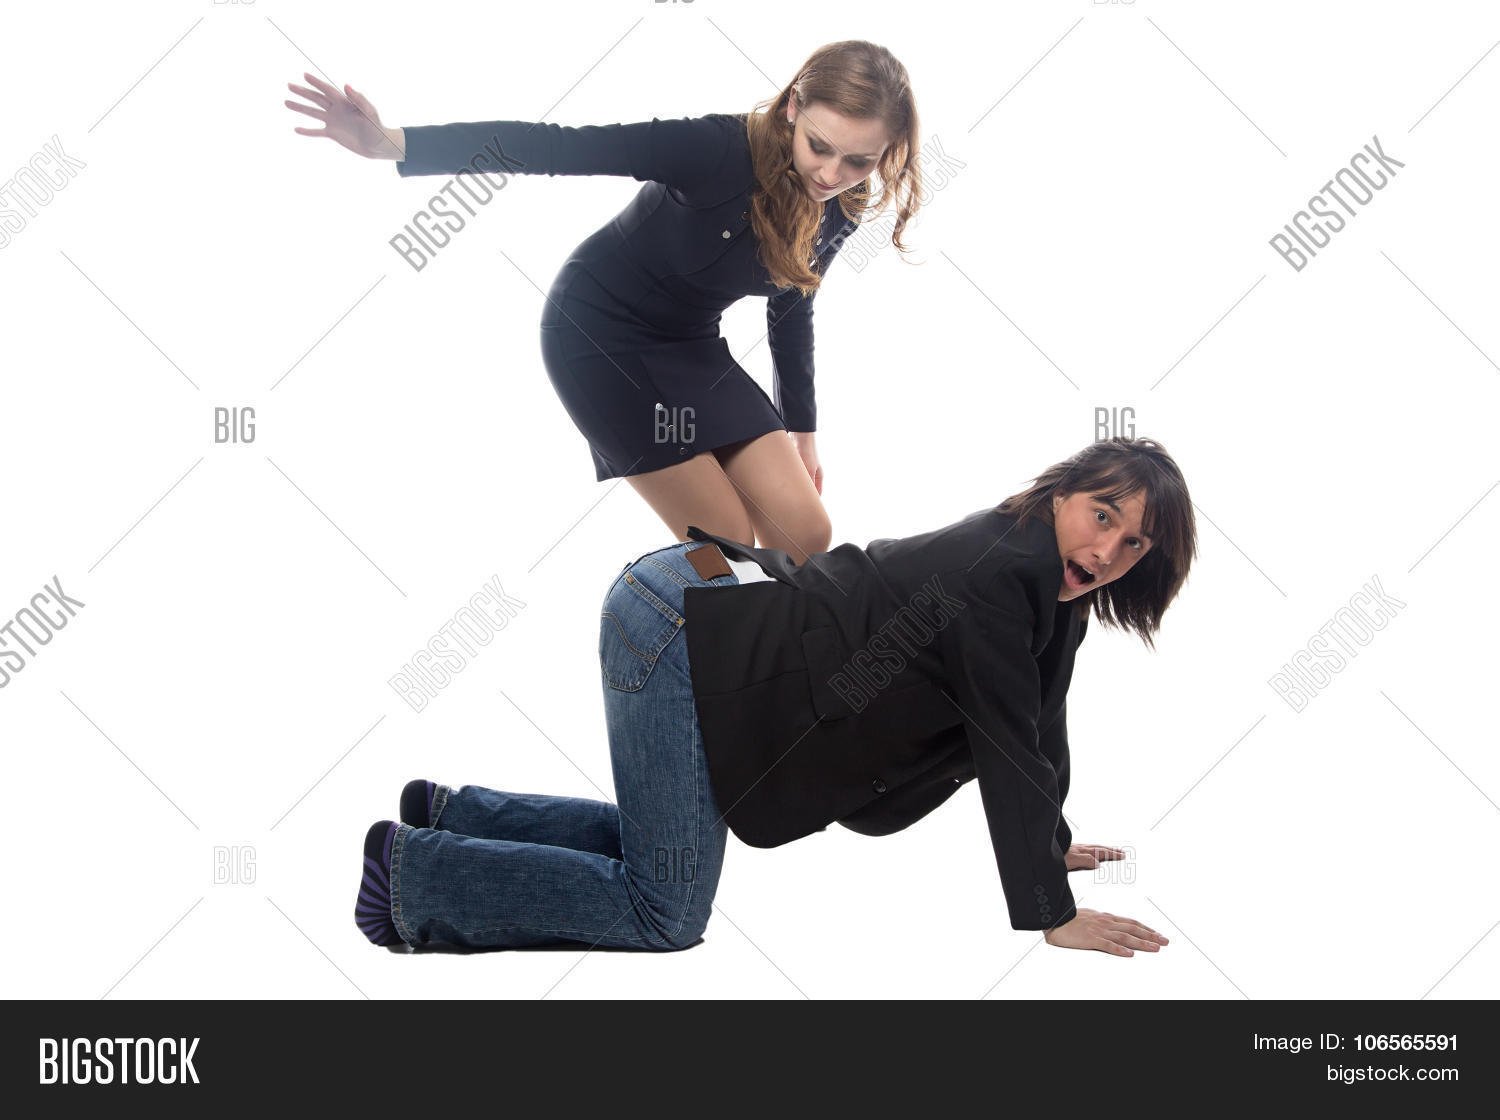 девушка бьет парня по жопе (119) фото